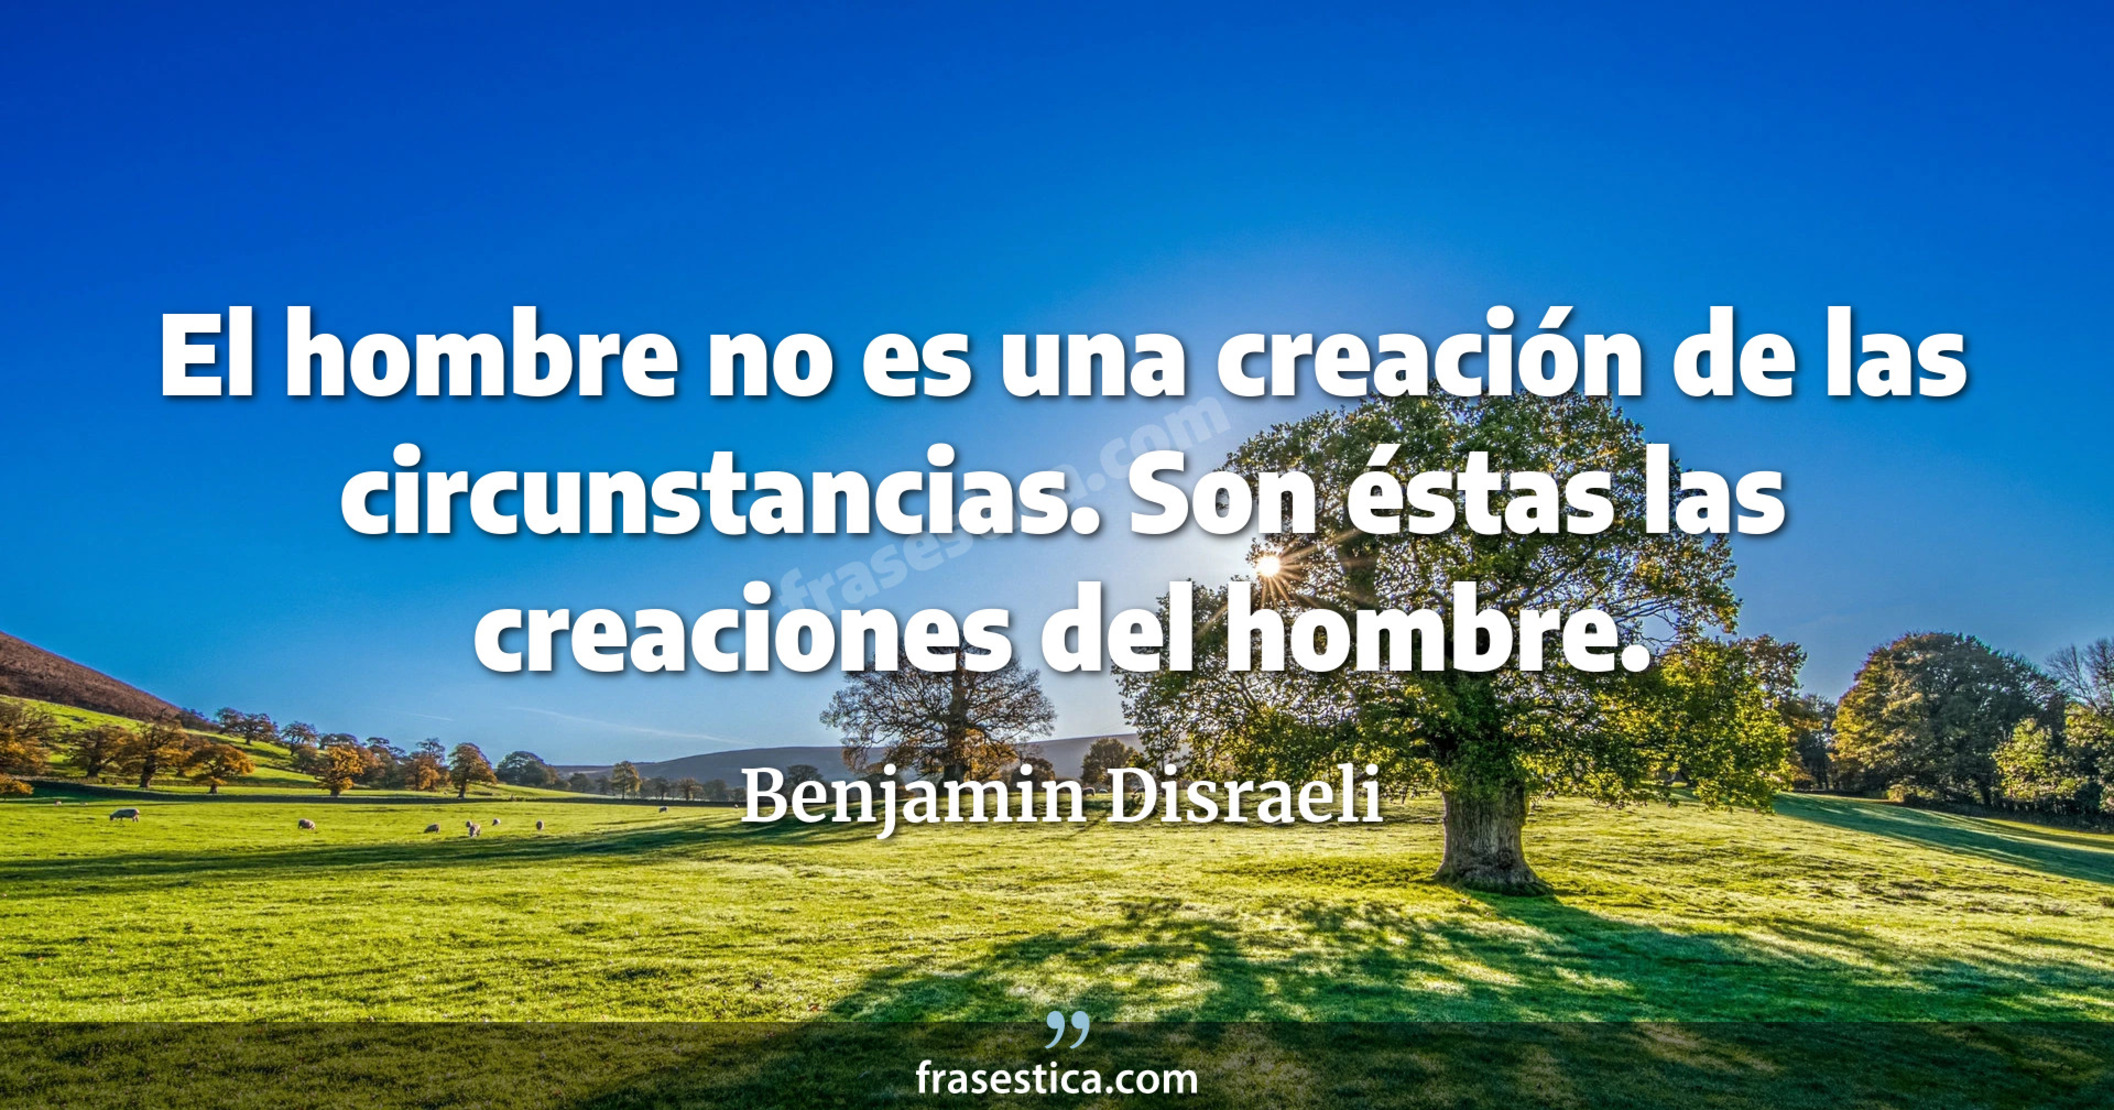 El hombre no es una creación de las circunstancias. Son éstas las creaciones del hombre. - Benjamin Disraeli